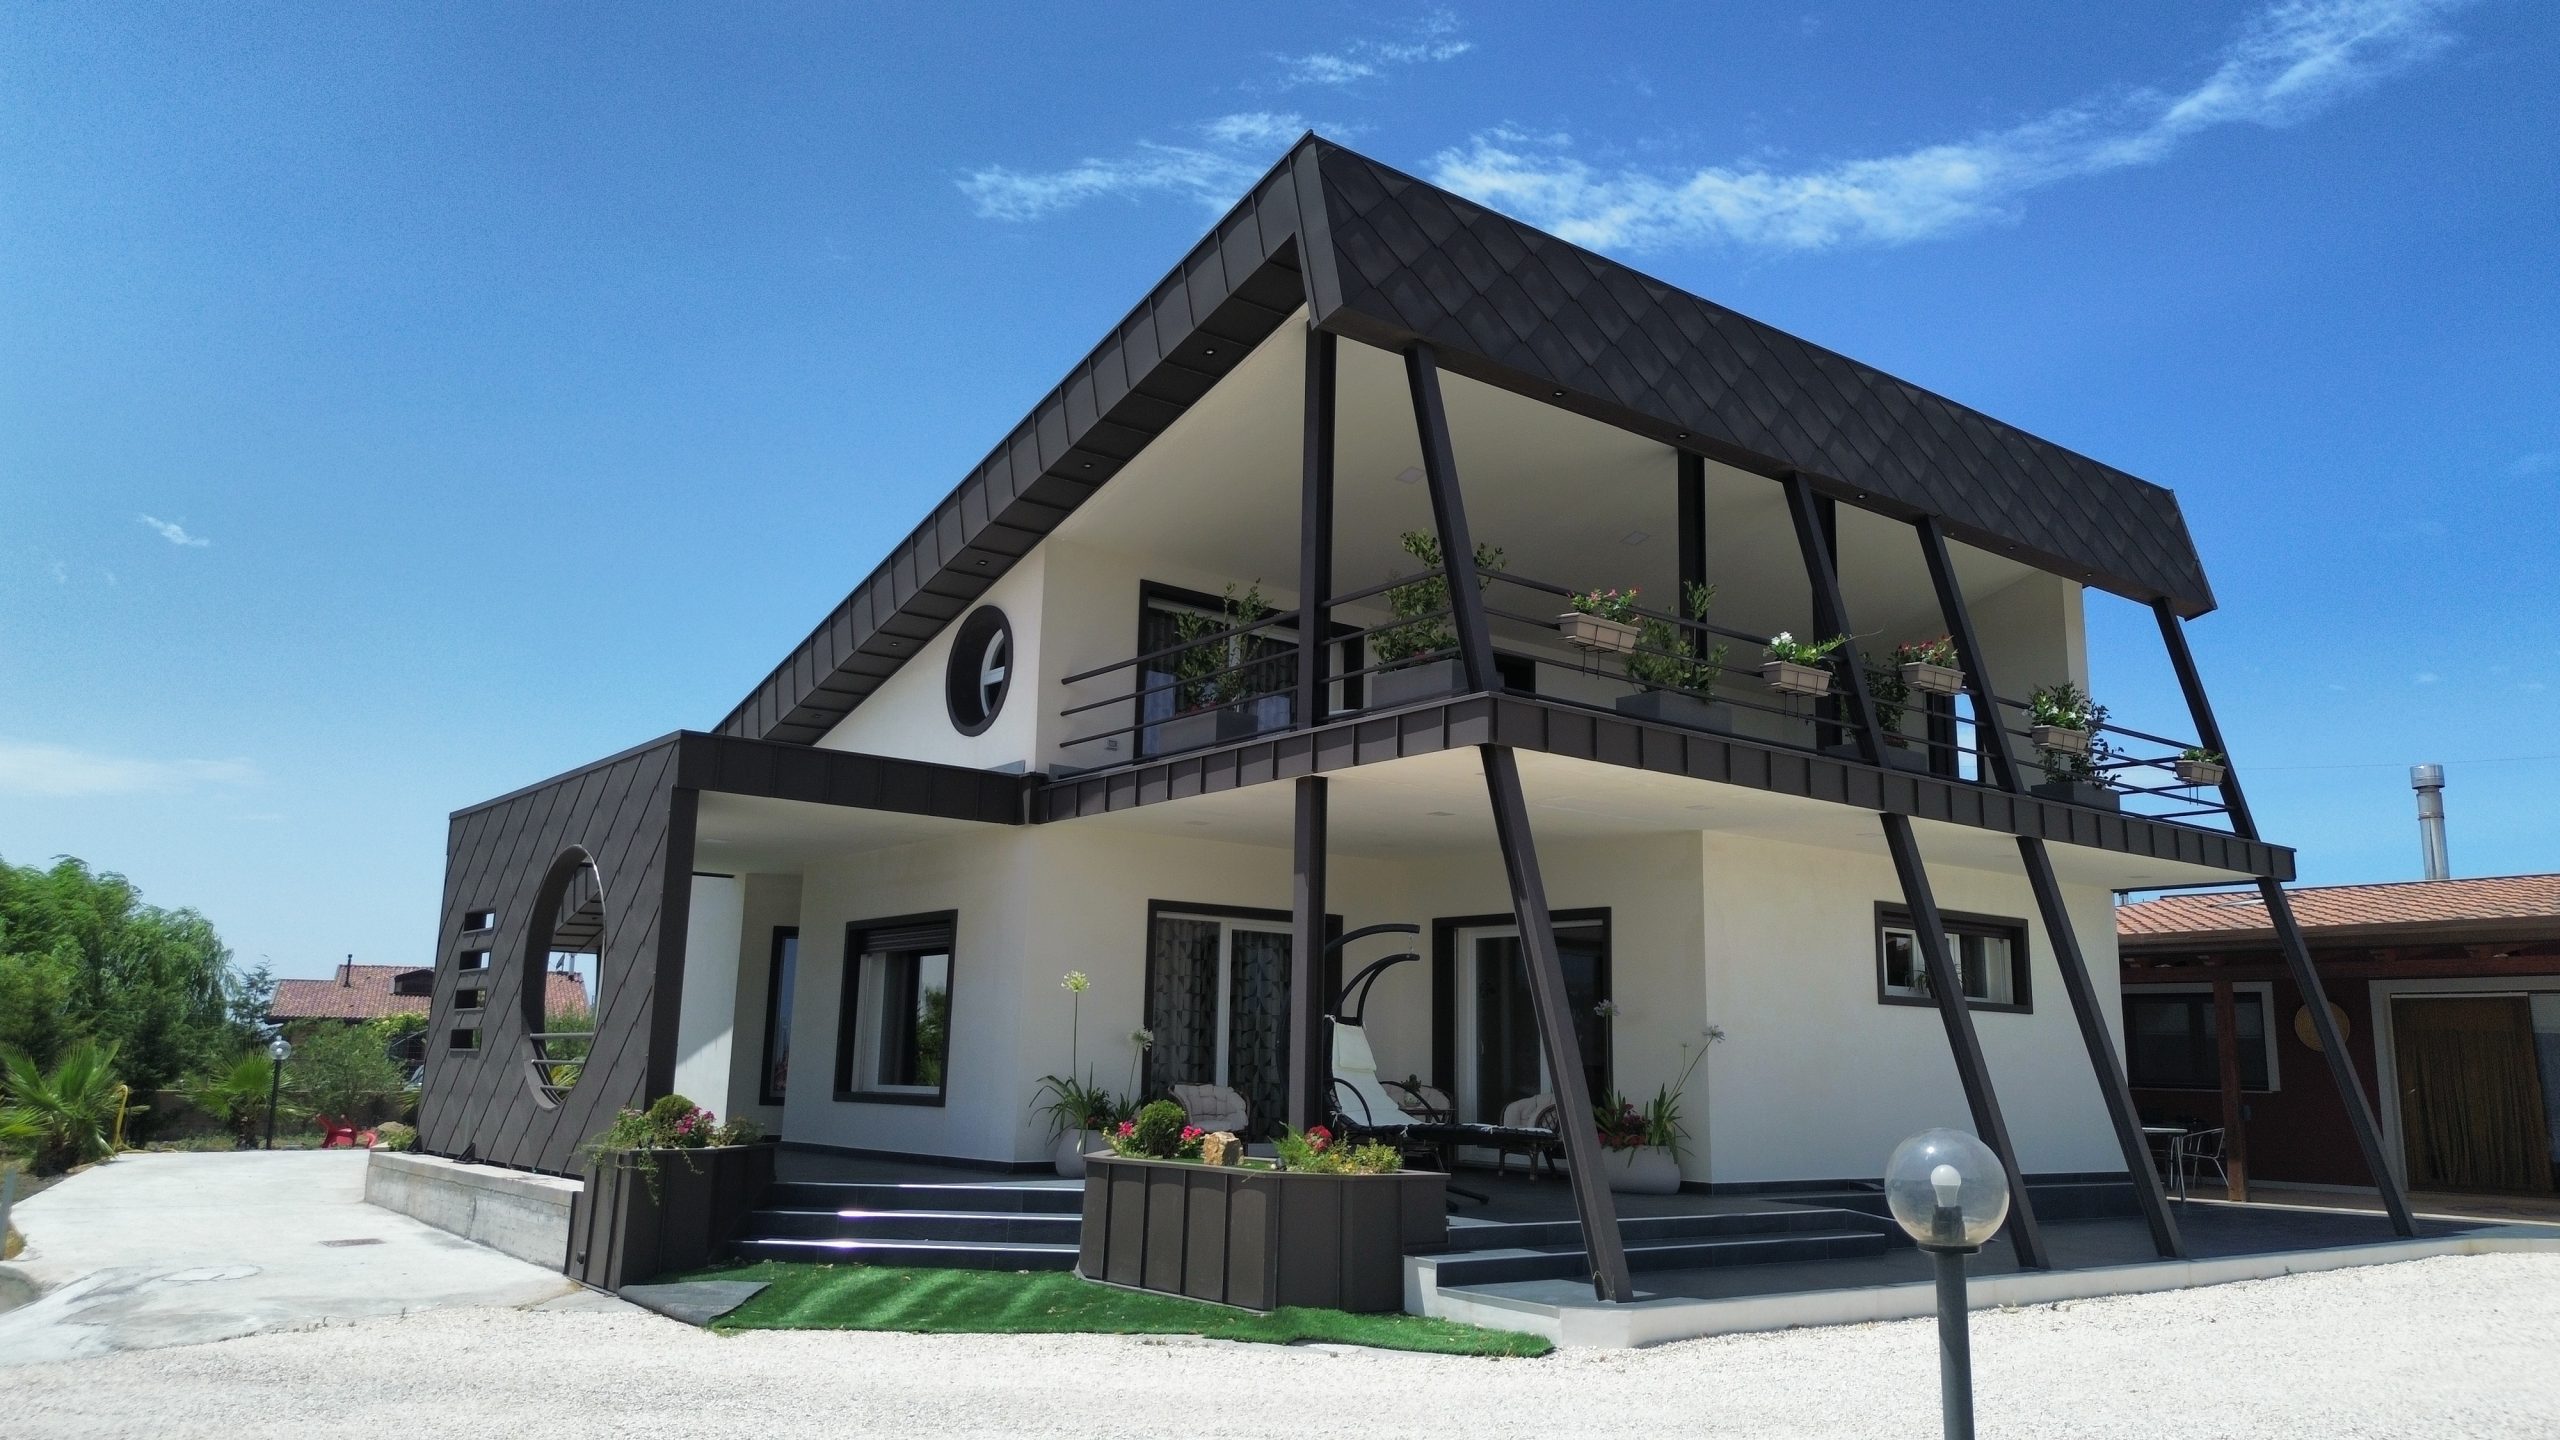 Efficienza energetica ed eleganza architettonica: un edificio NZEB dialoga con il paesaggio naturale del Parco